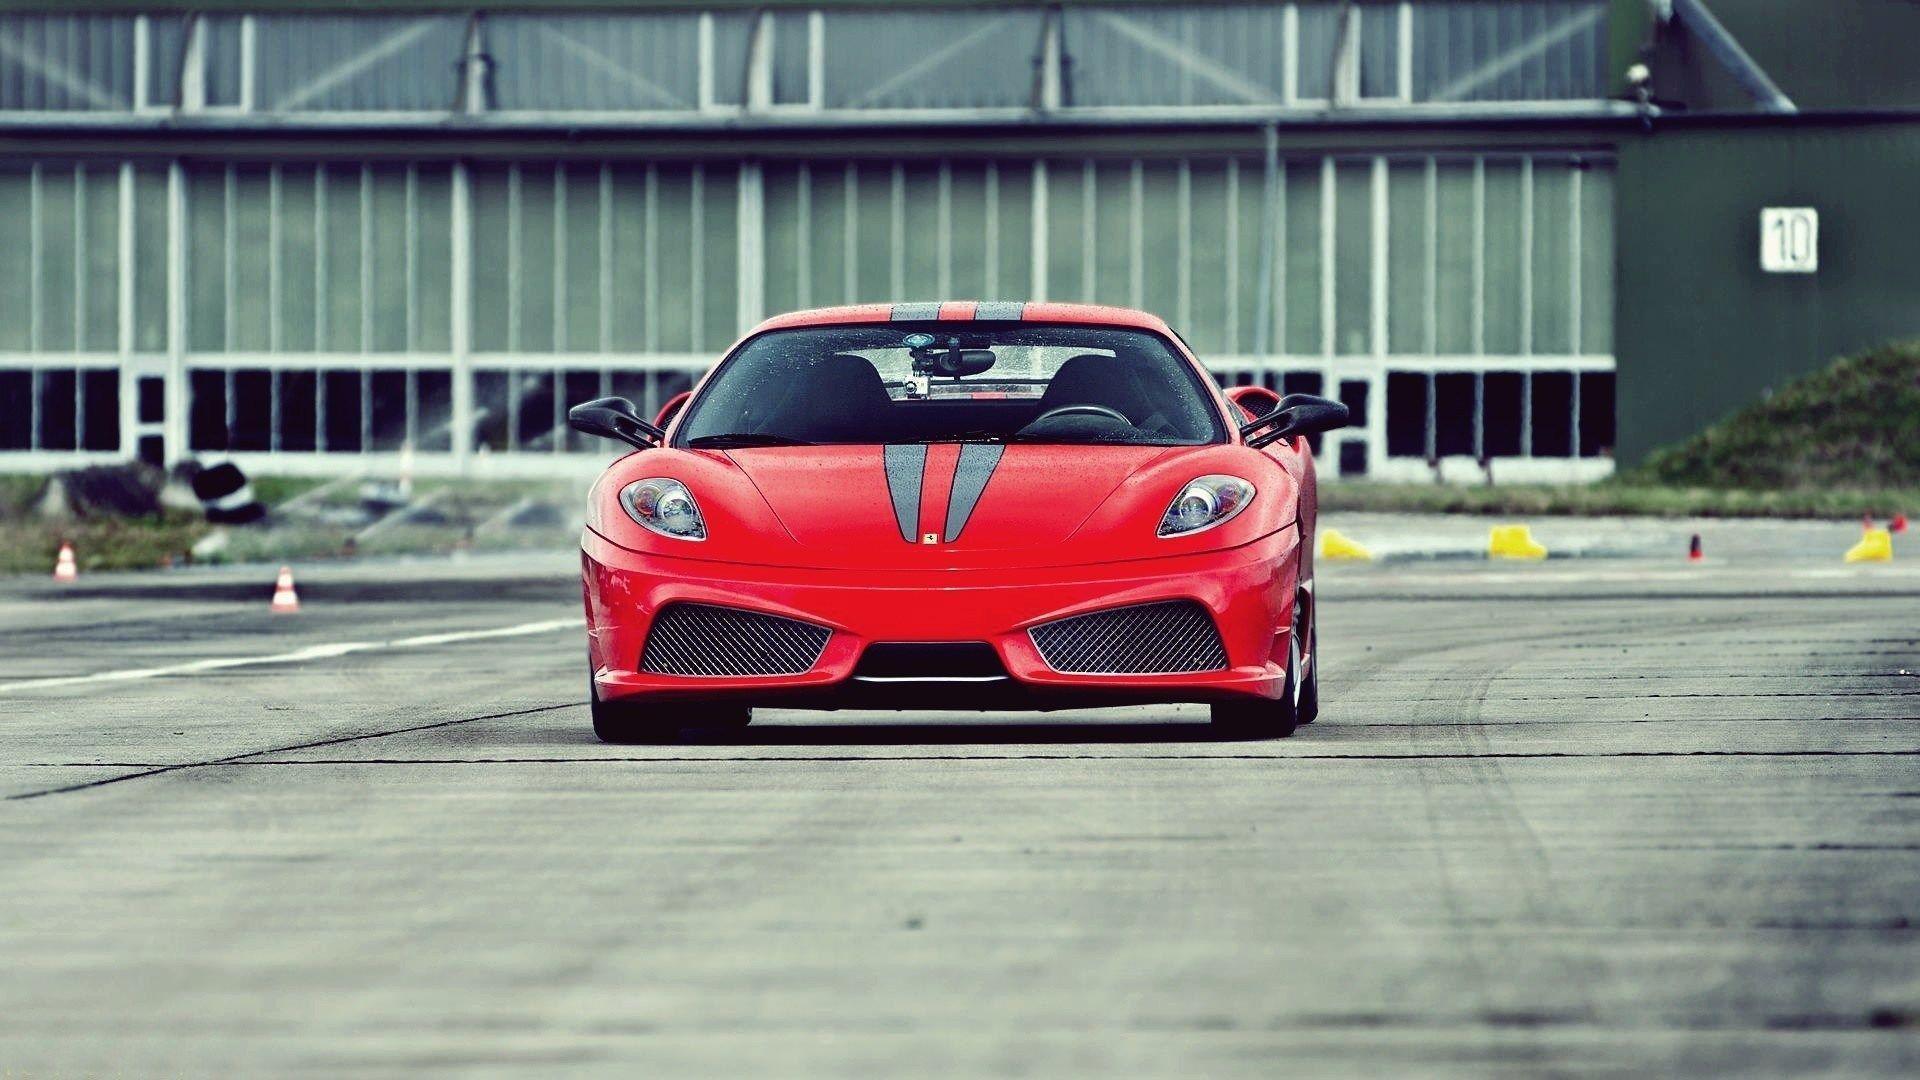 Ferrari F430 Scuderia Test Track Front Photo HD Wallpapers